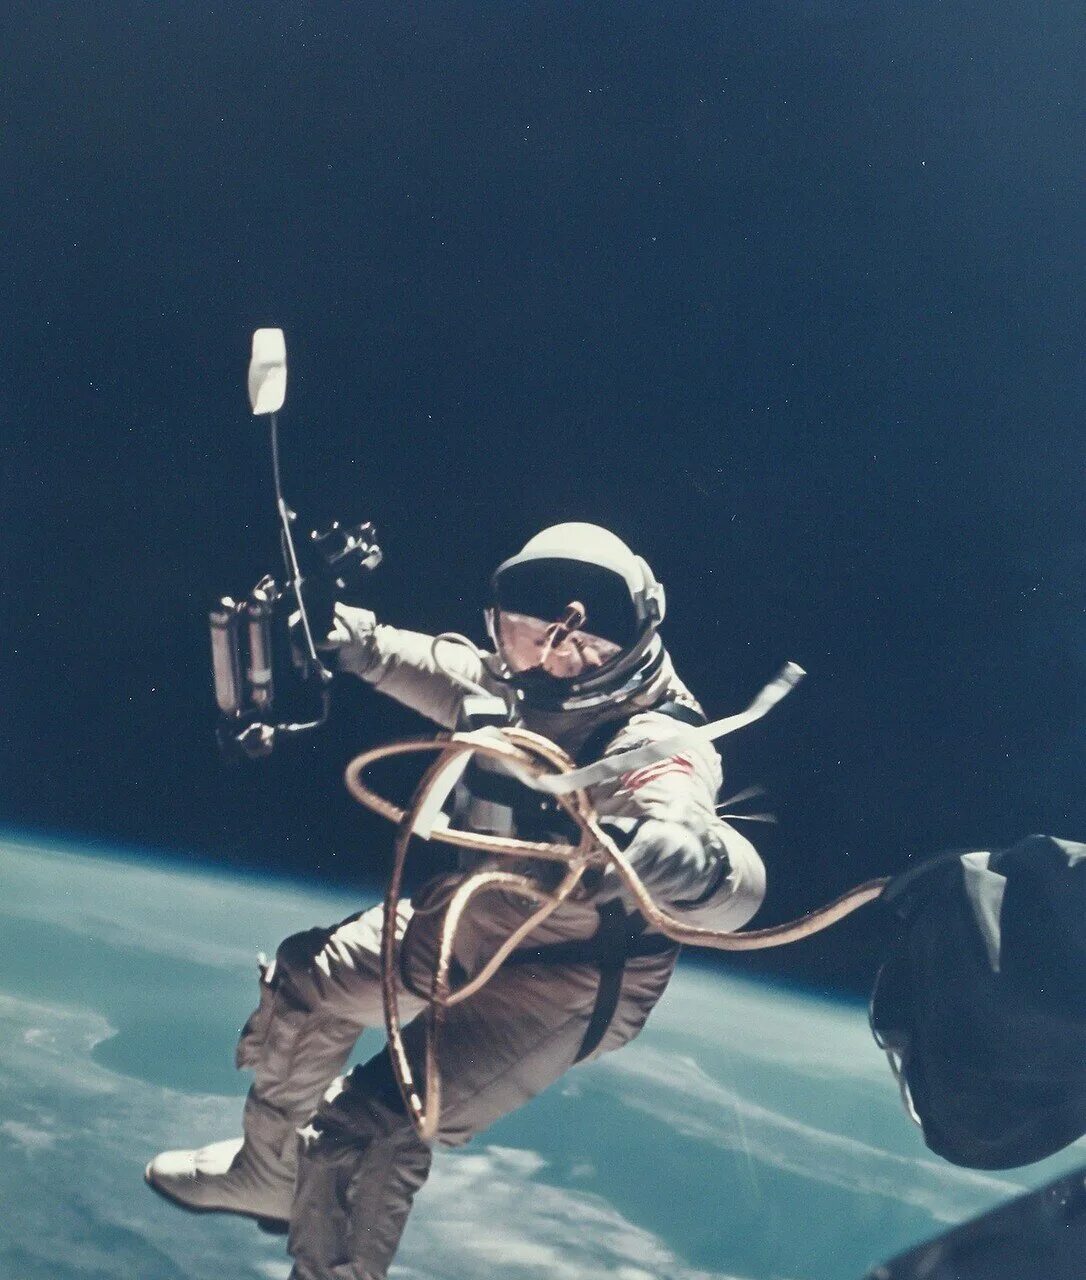 Первый астронавт в открытом космосе. Космонавт Леонов в открытом космосе. Первый выход в космос Леонова.